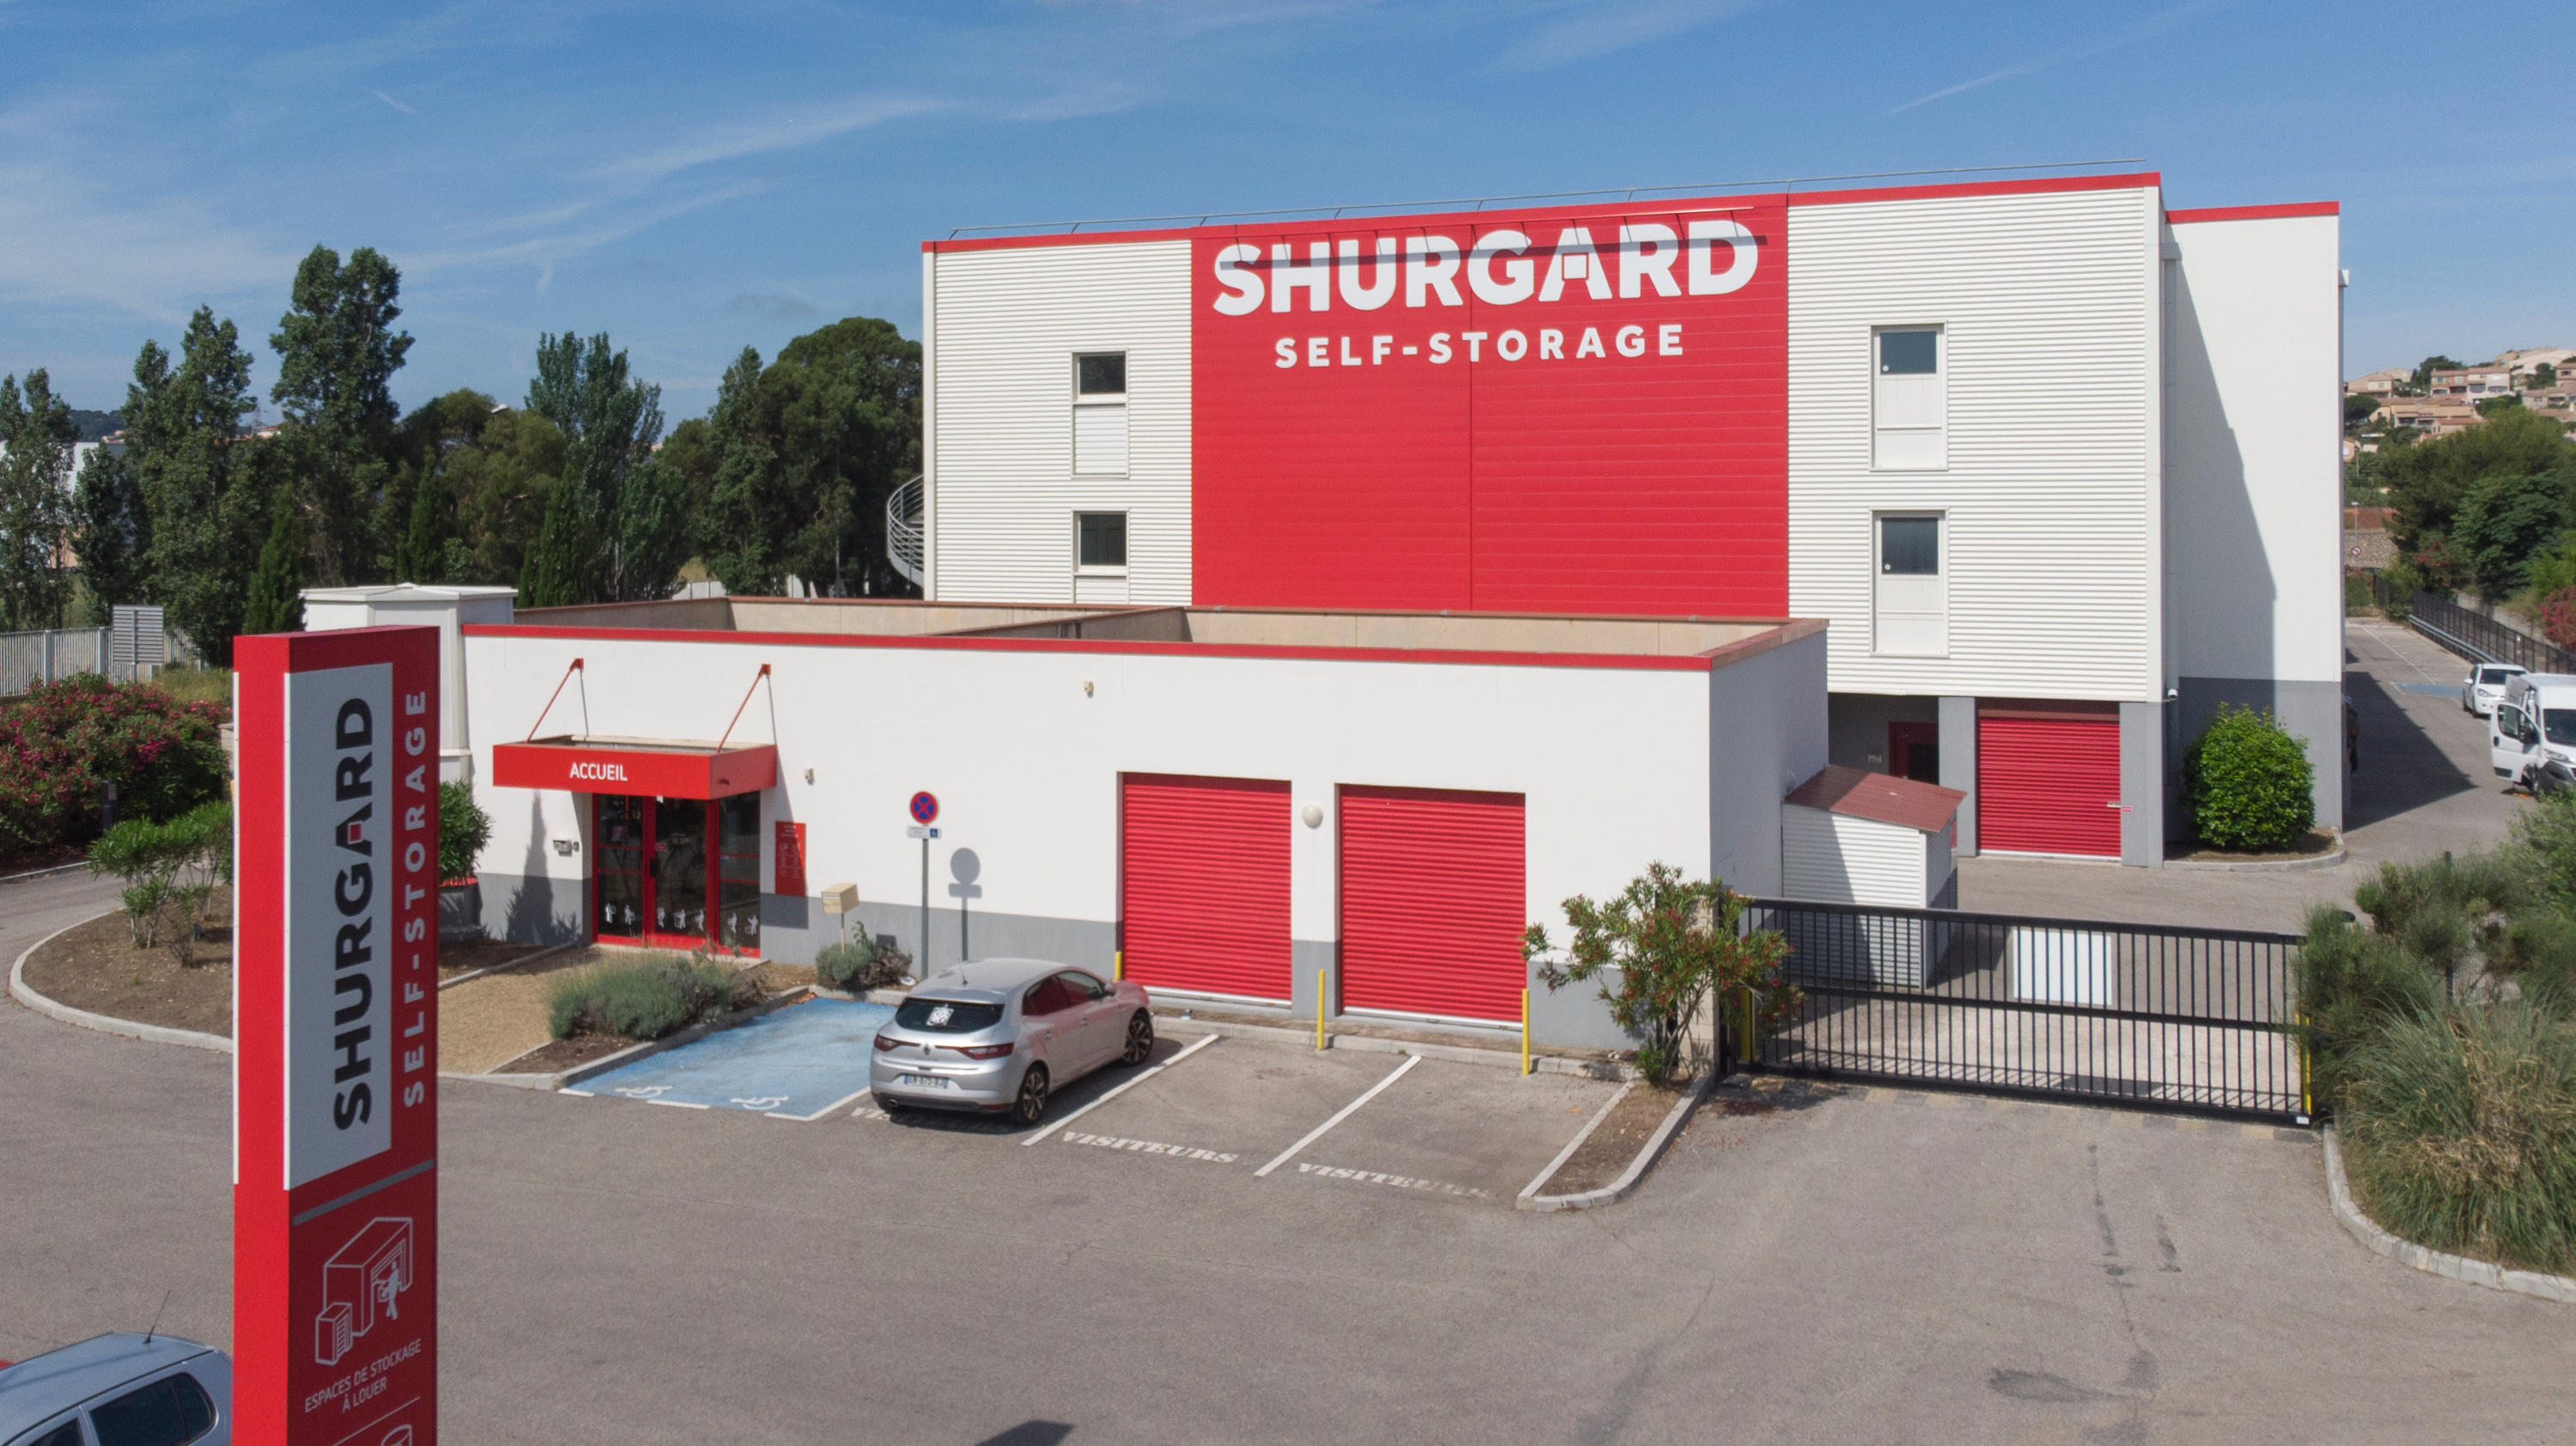 Shurgard Self Storage Toulon - La Seyne-sur-Mer